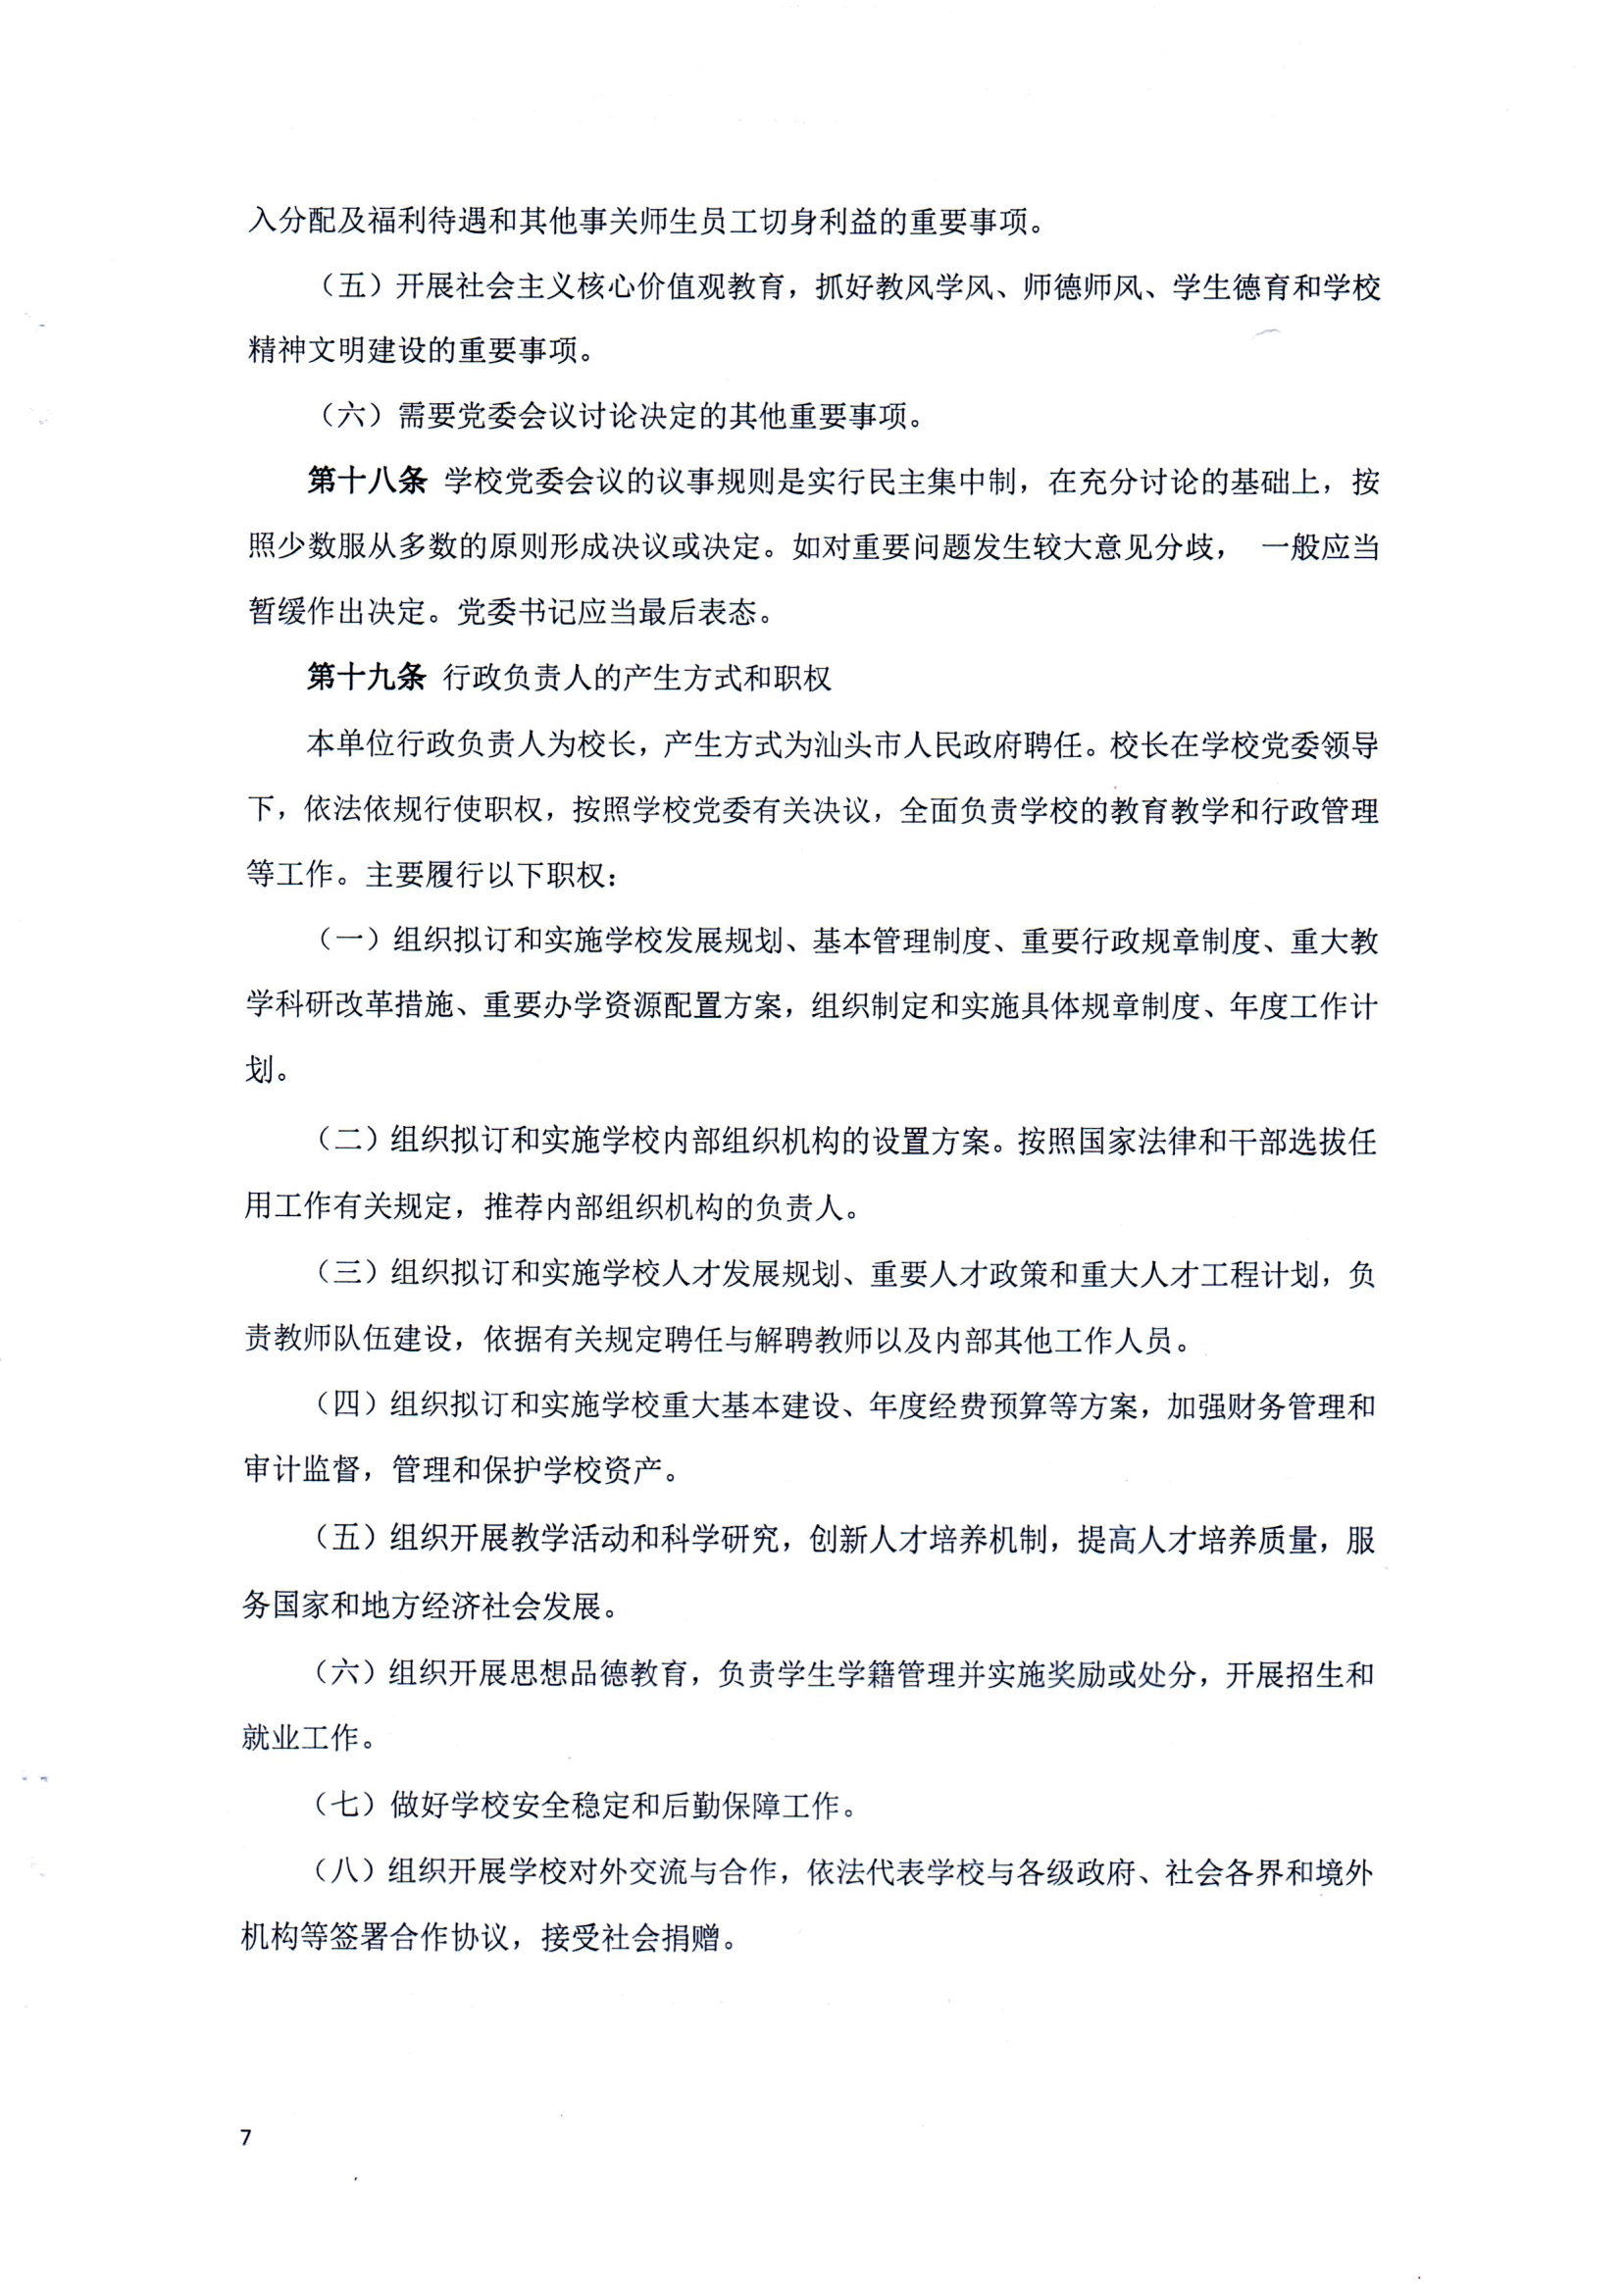 （中国）有限公司官网章程（修正案）_06.png